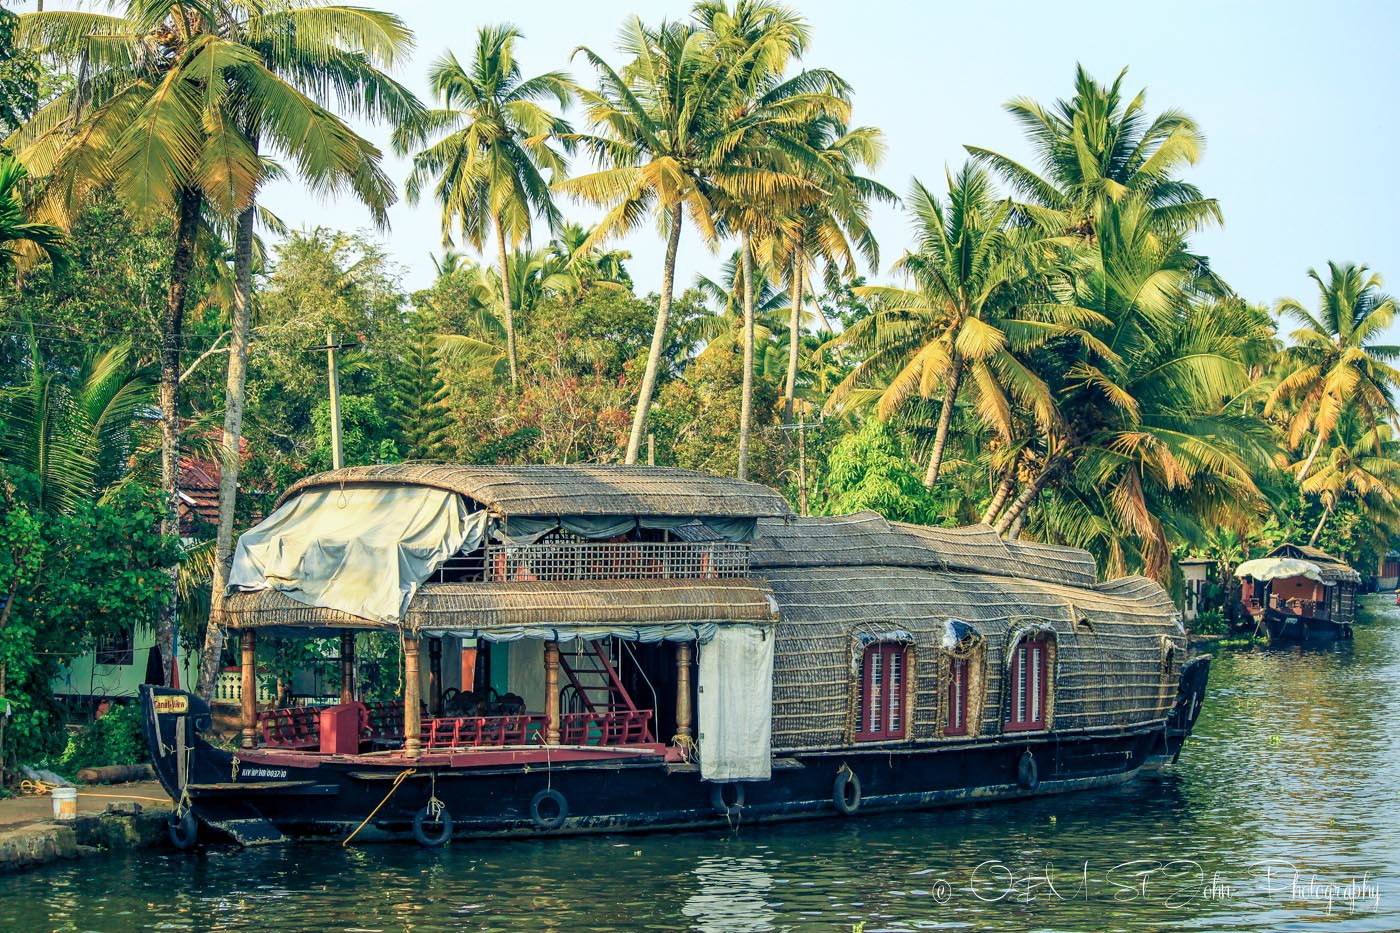 Kettuvallams (house boat) in Kerala Backwaters, India